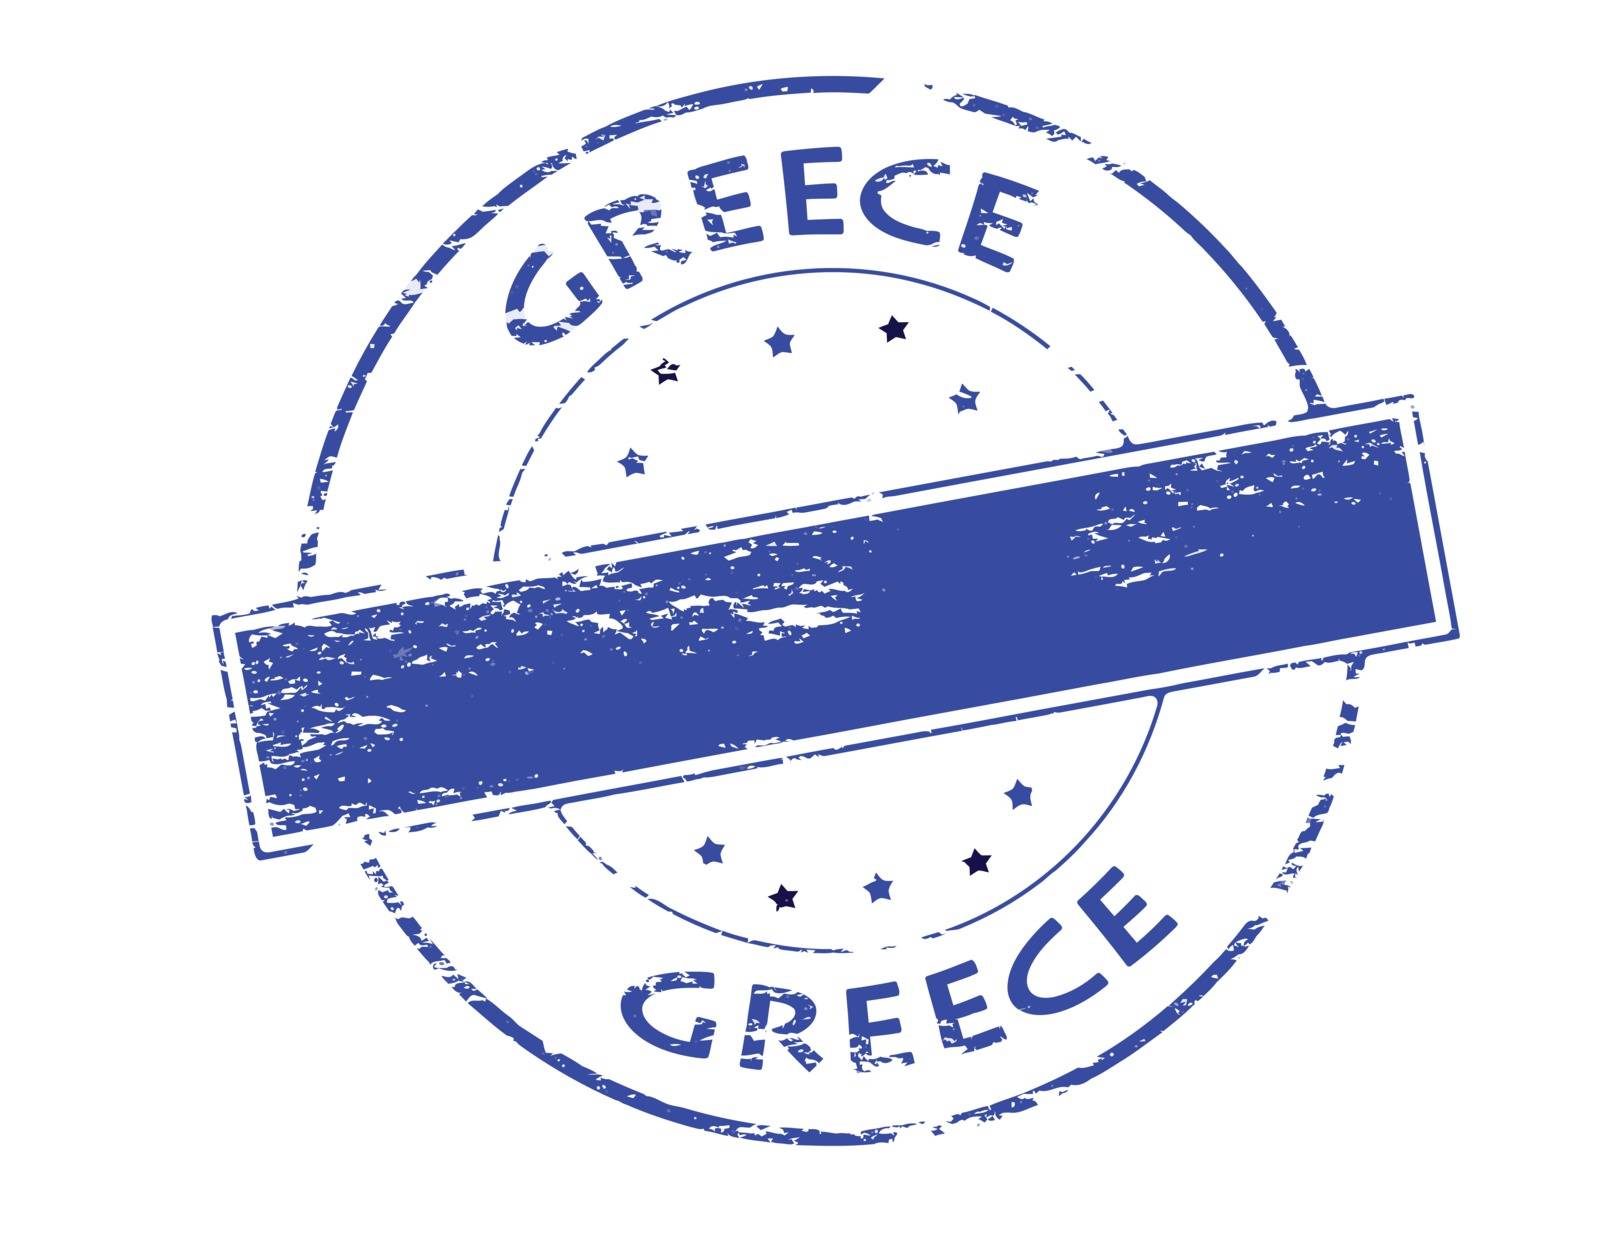 Greece by carmenbobo